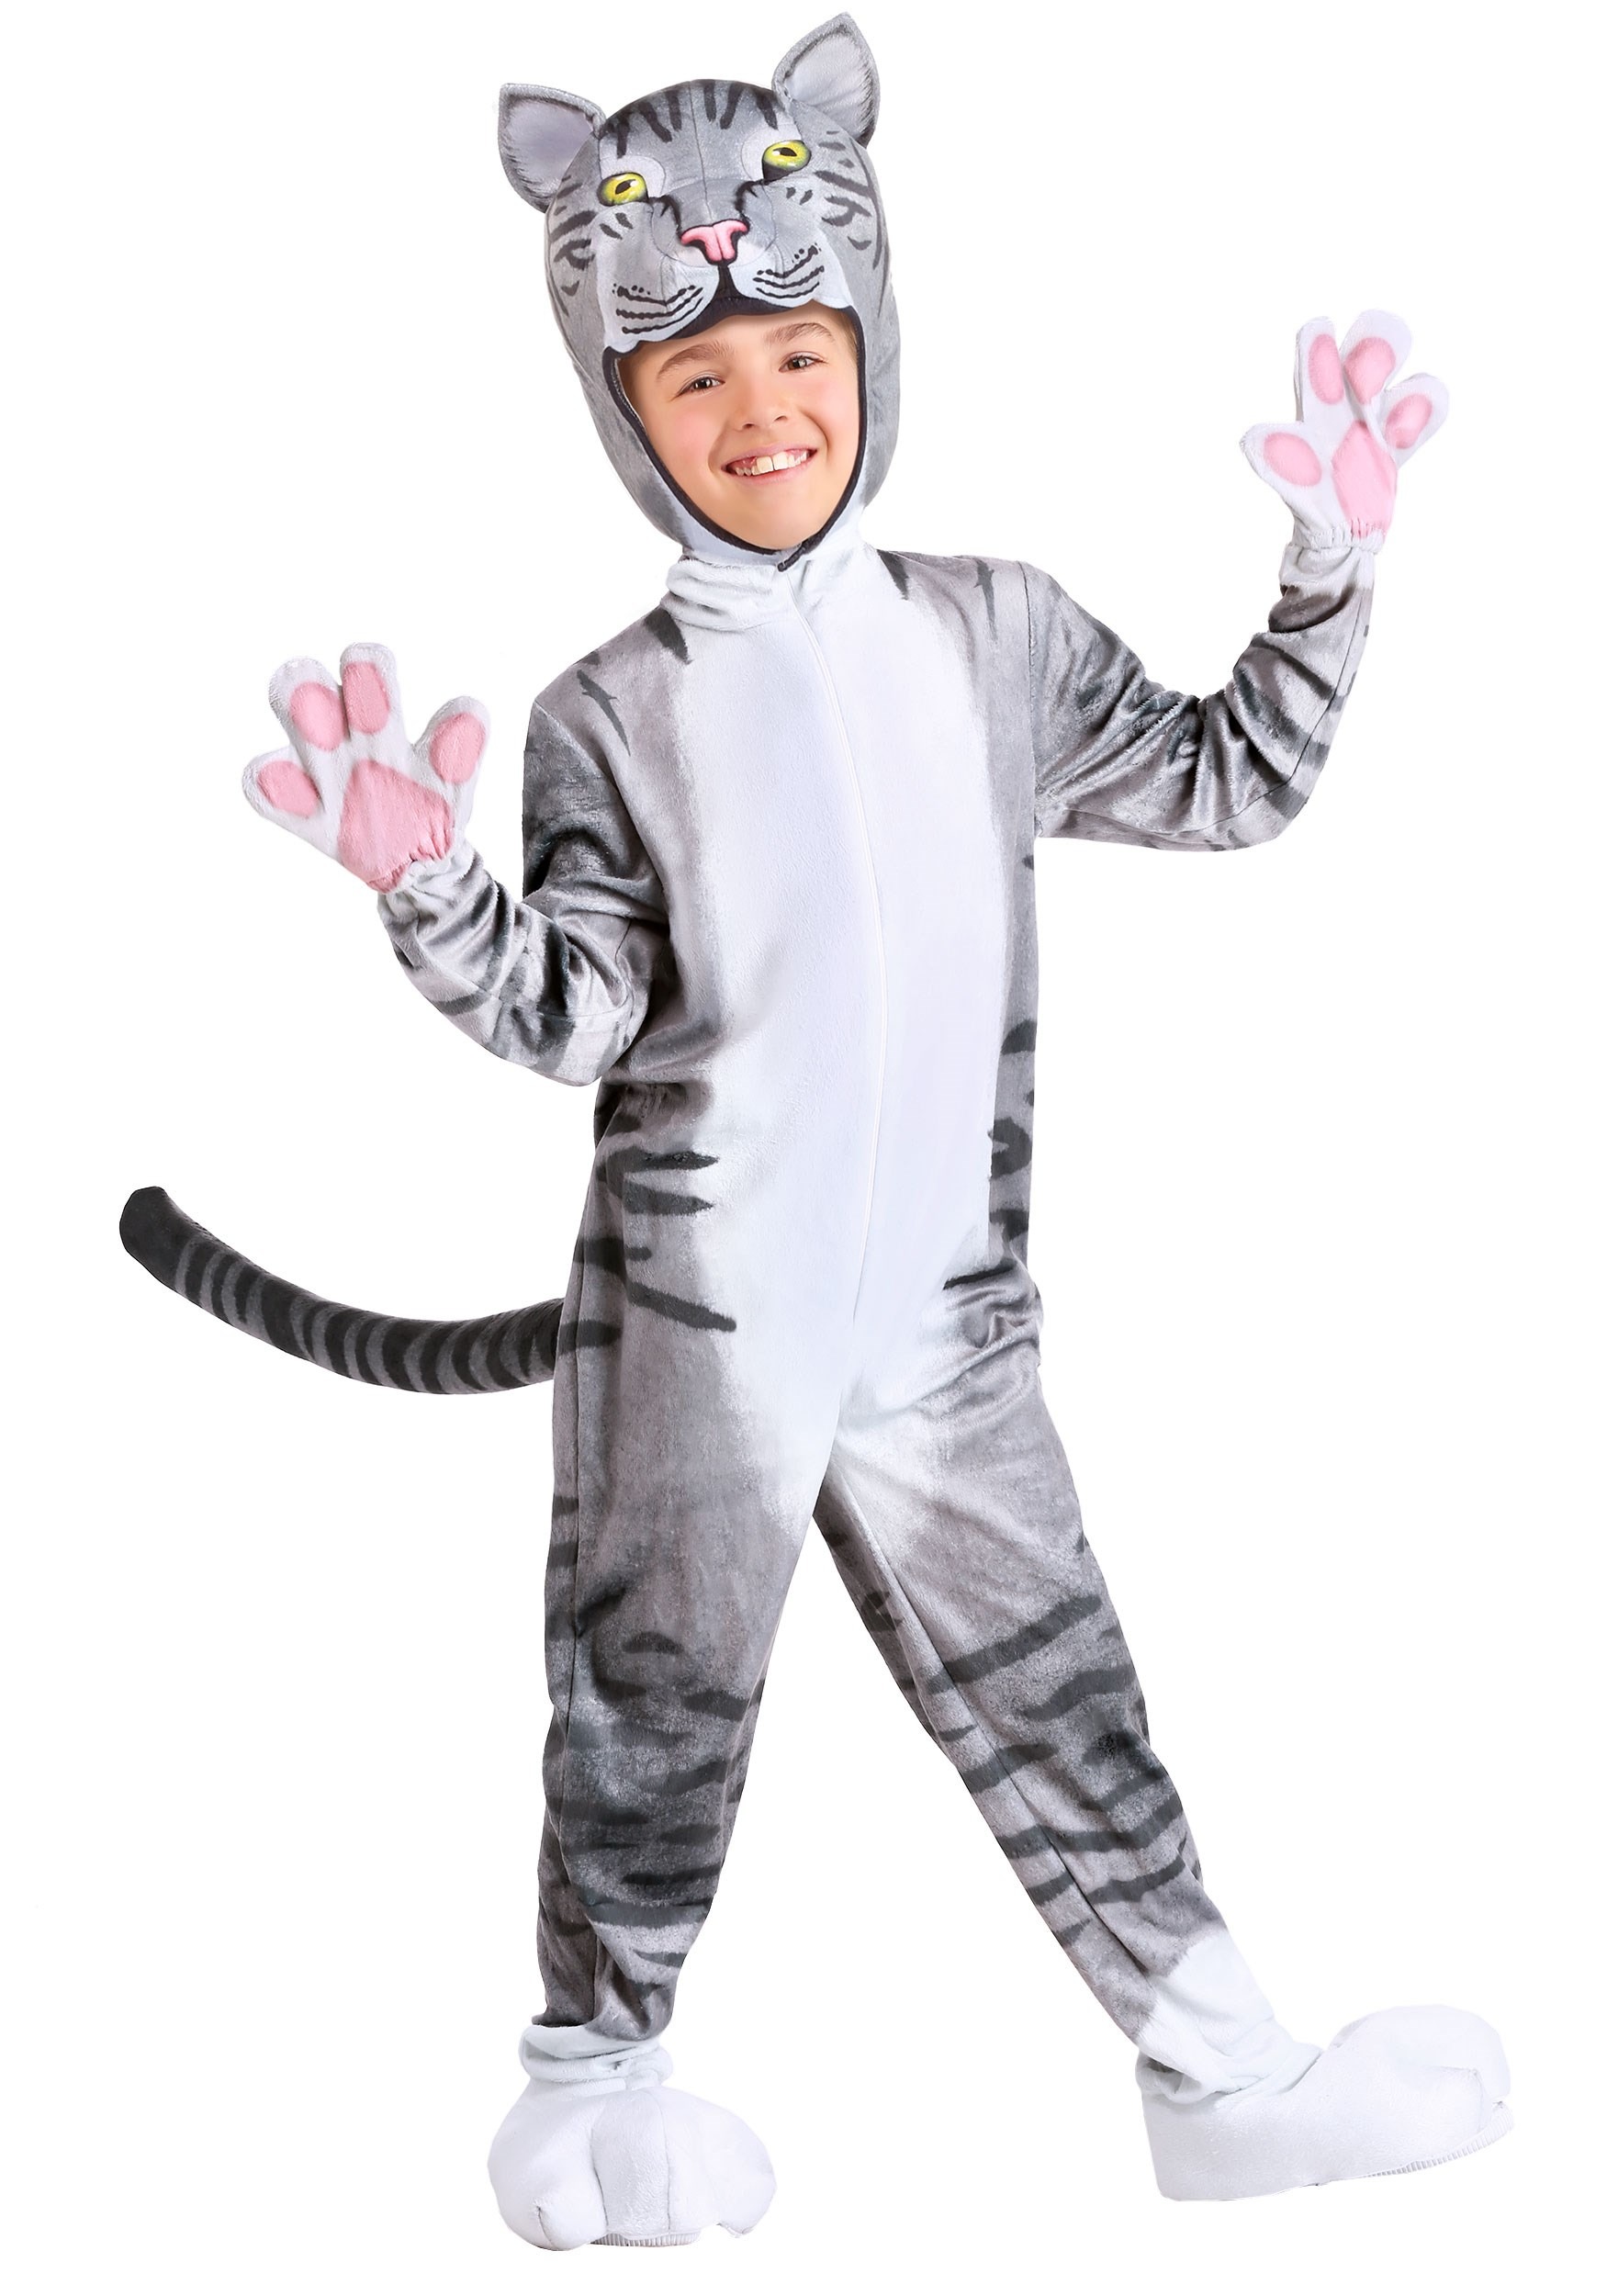 Curious Cat Kid’s Costume